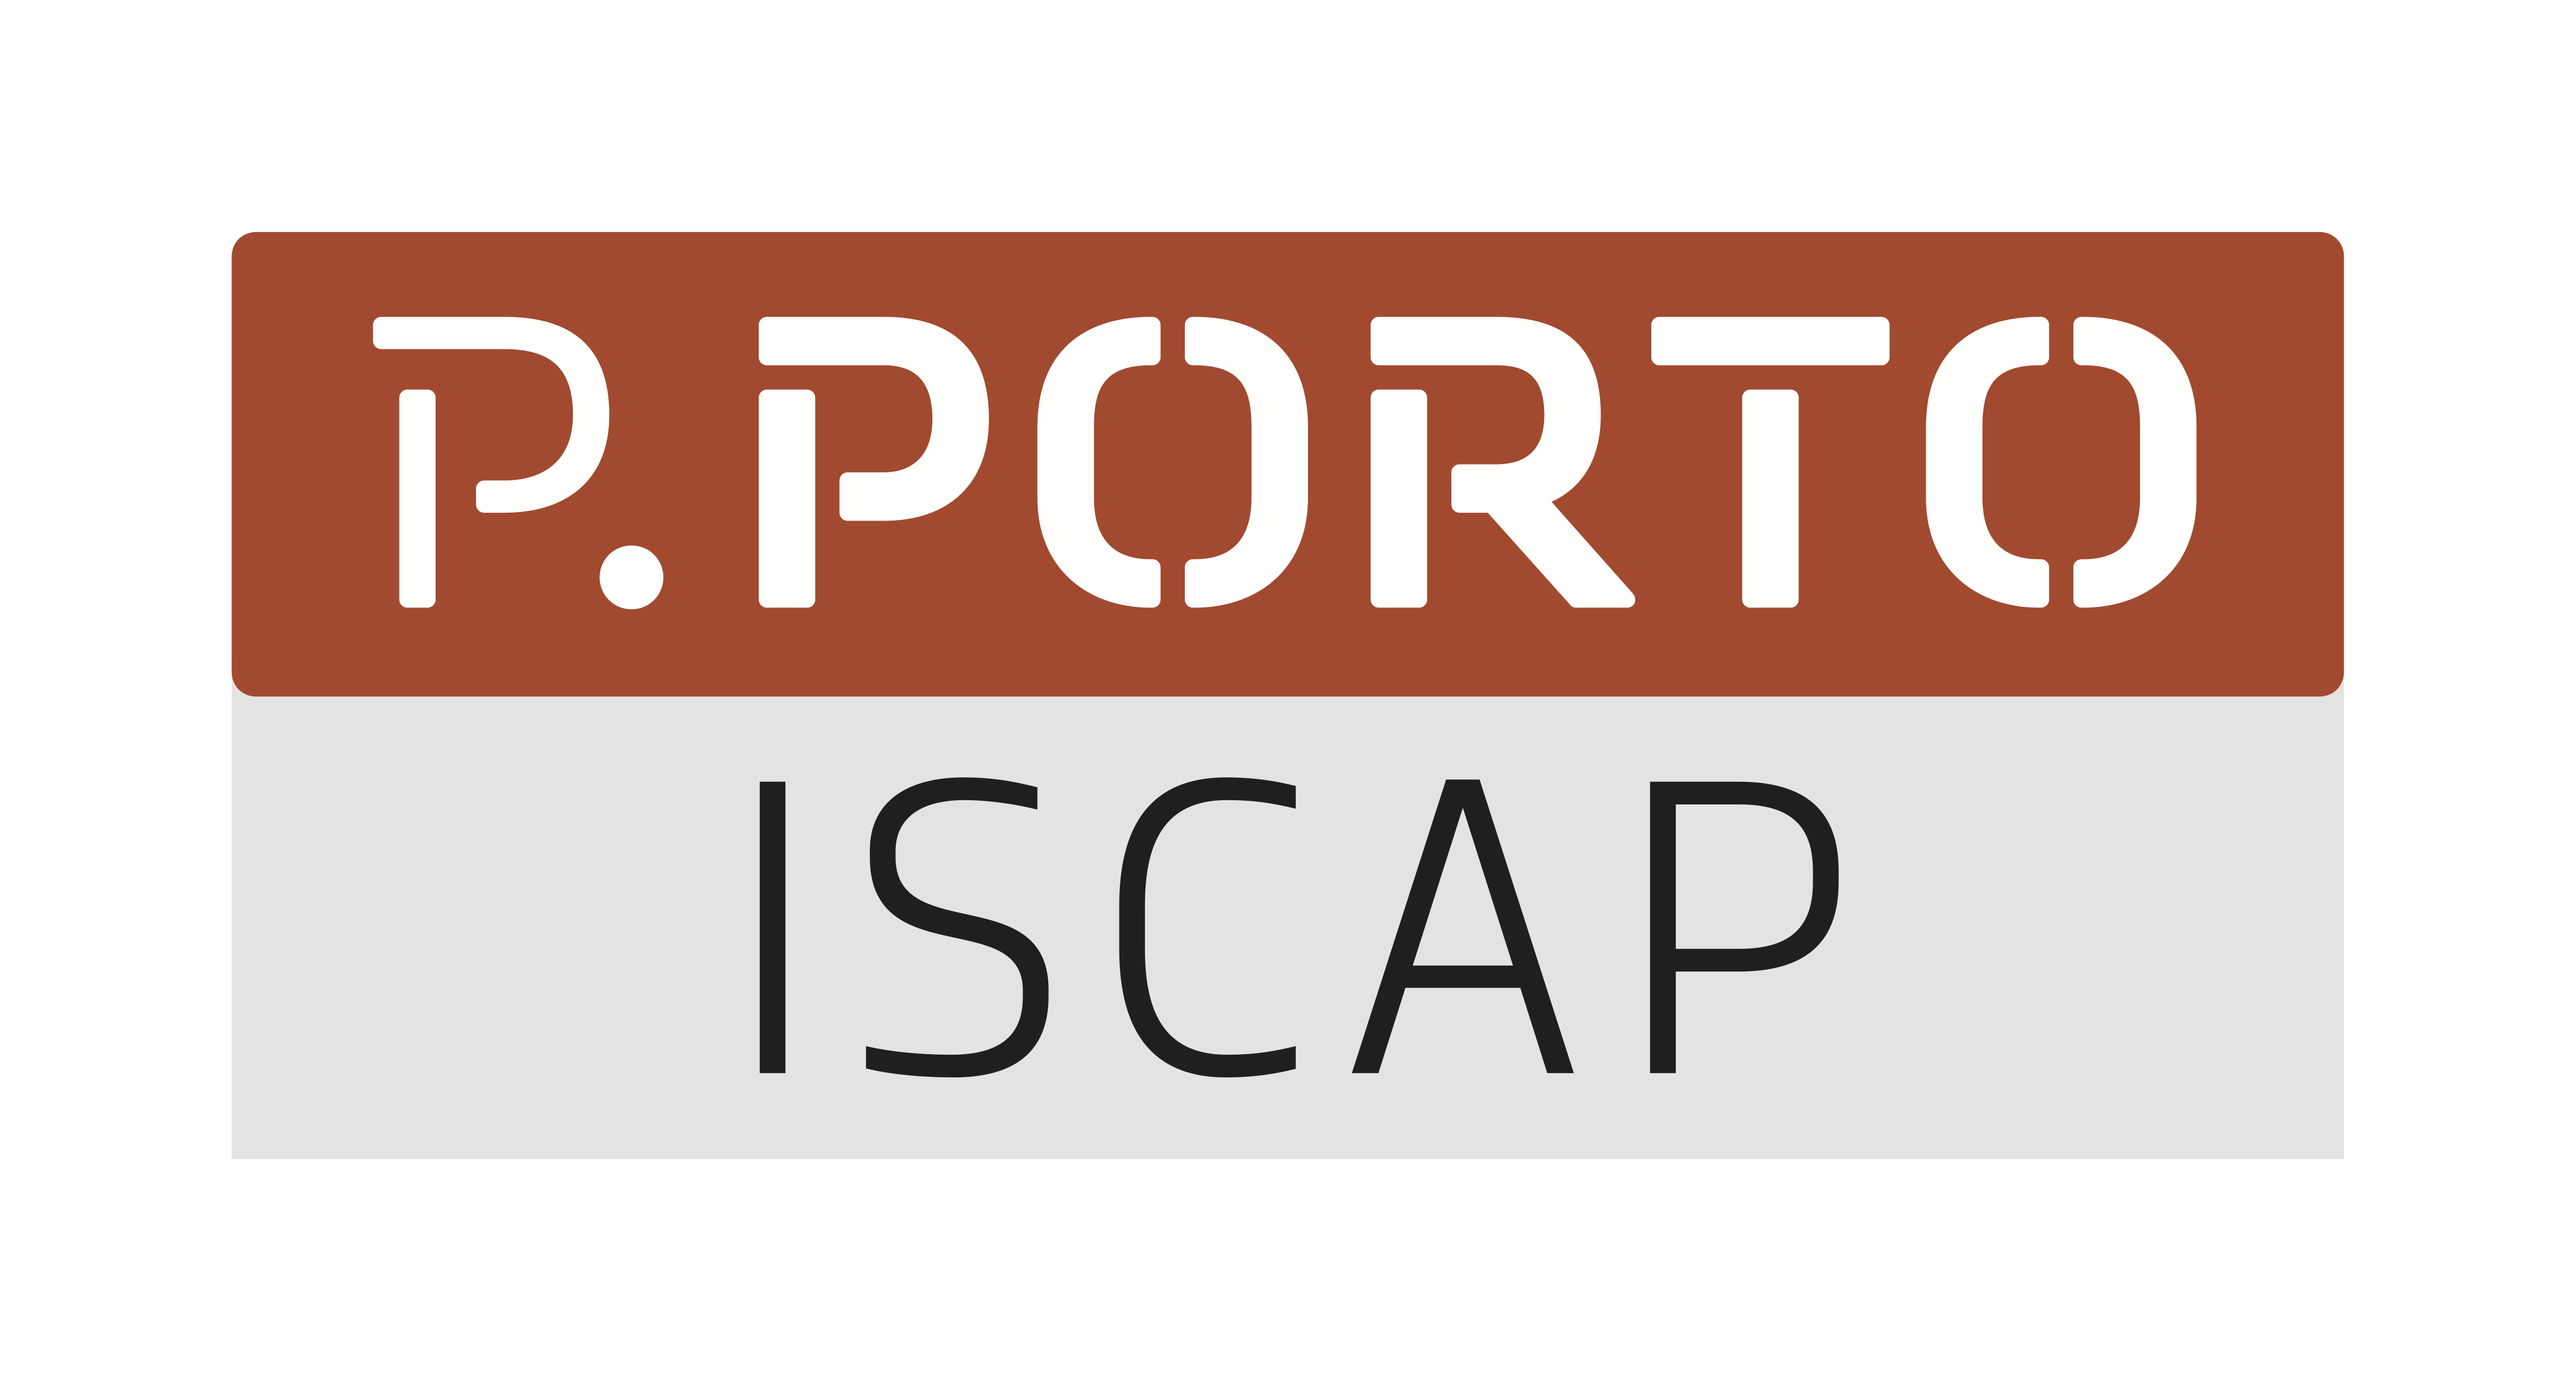 ISCAP - Polytechnic of Porto